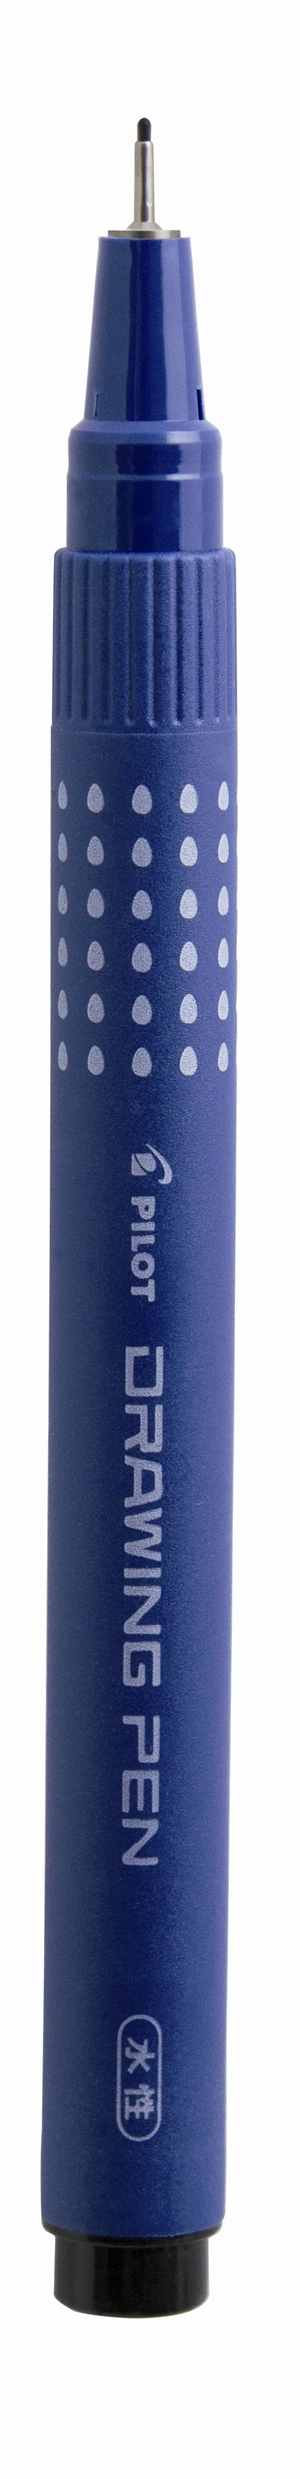 Pilot Filtpen m/hætte Drawing Pen 0,3mm sort